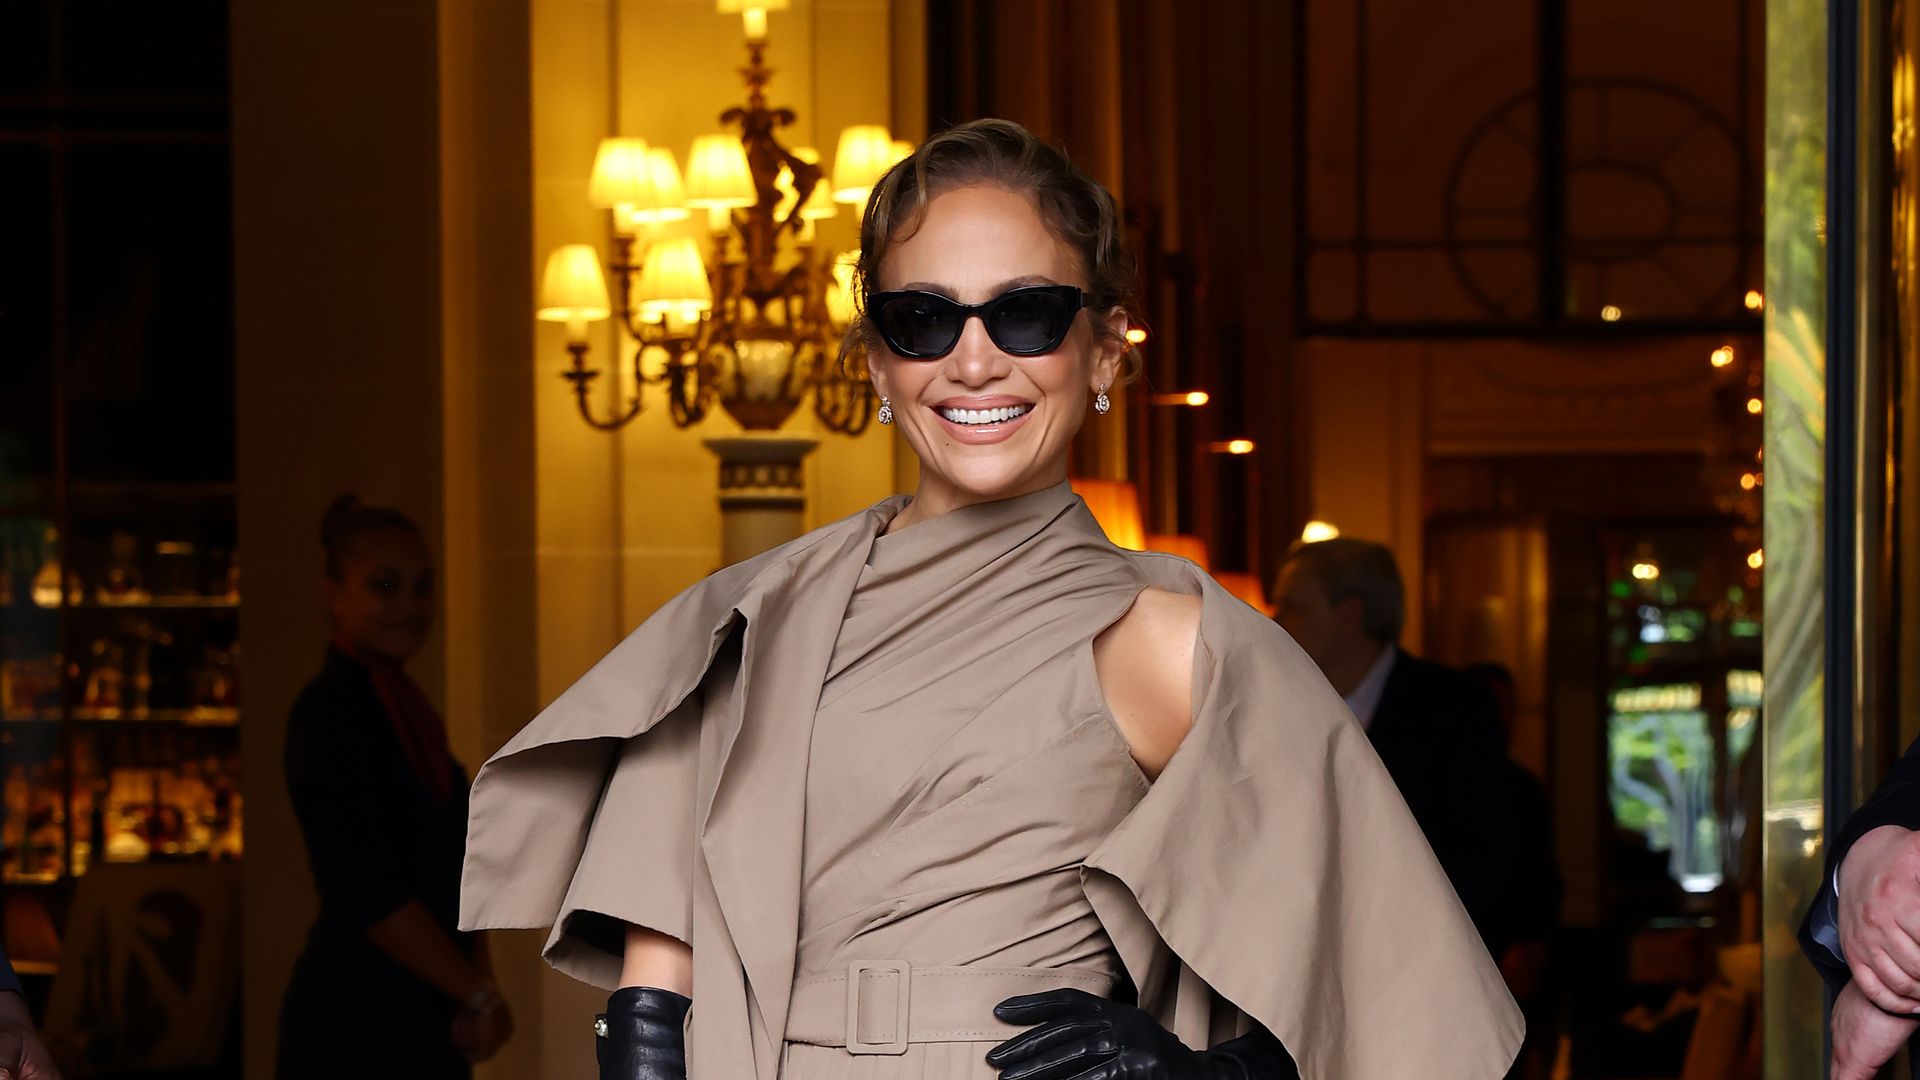 El deslumbrante regreso de Jennifer Lopez en París mientras Ben Affleck sigue su rutina en California sin su alianza